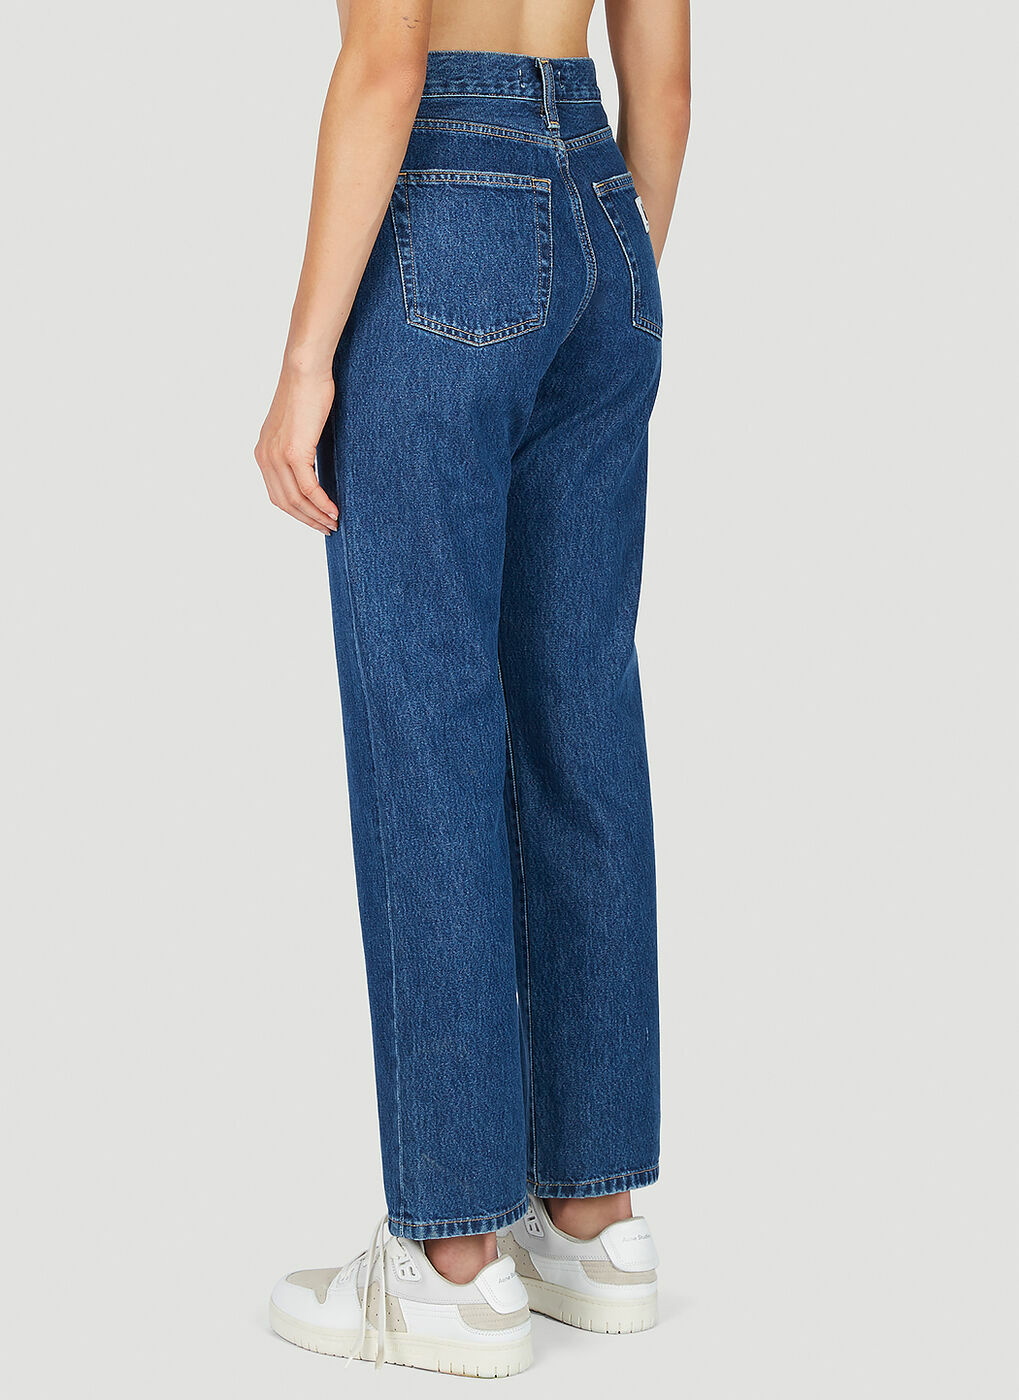 Carhartt WIP - W' Noxon Jeans in Blue Carhartt WIP